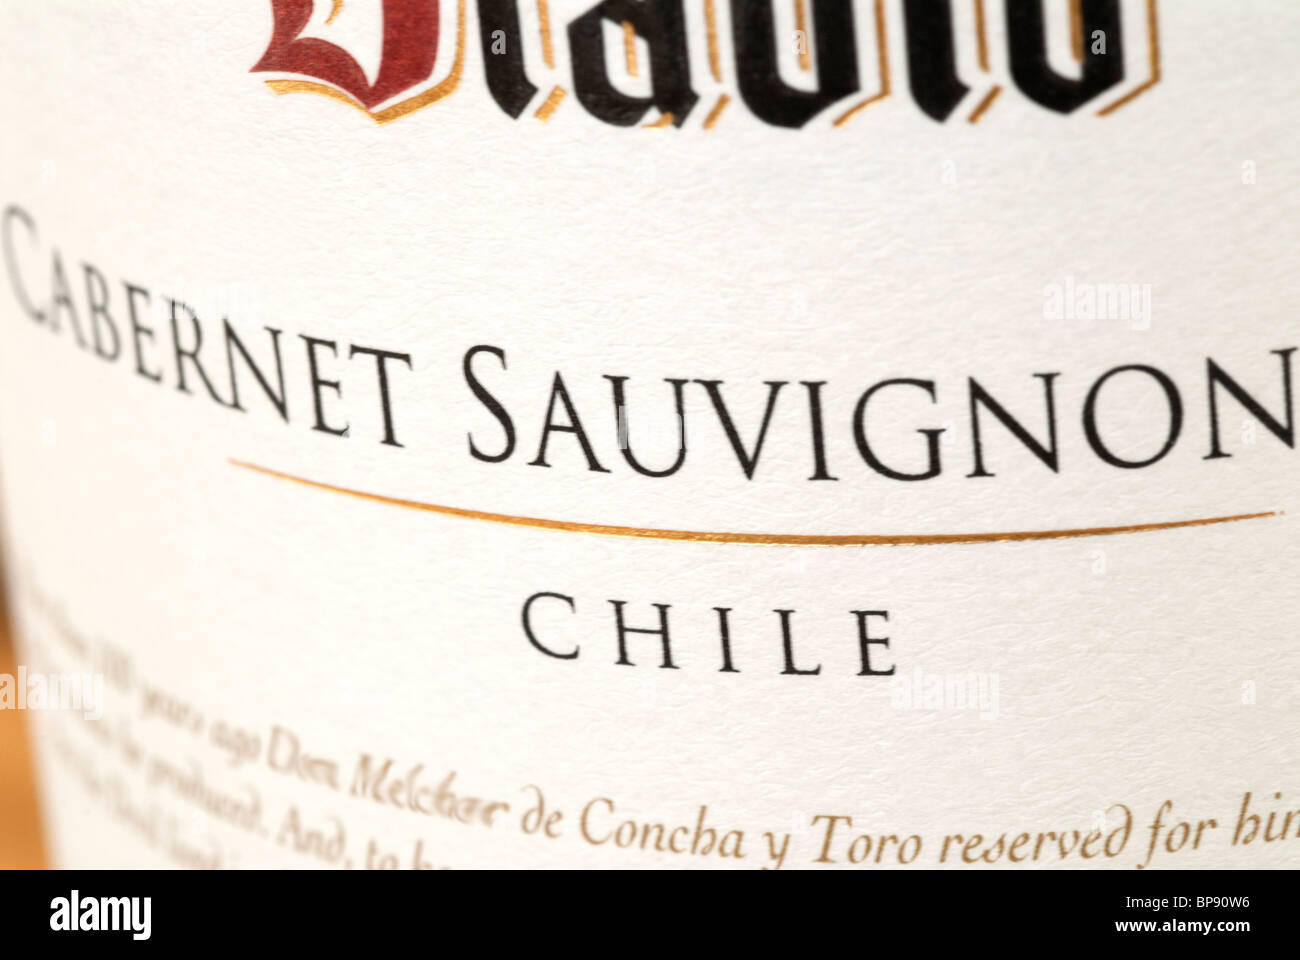 Chilean Cabernet Sauvignon Wine Label on Bottle Stock Photo